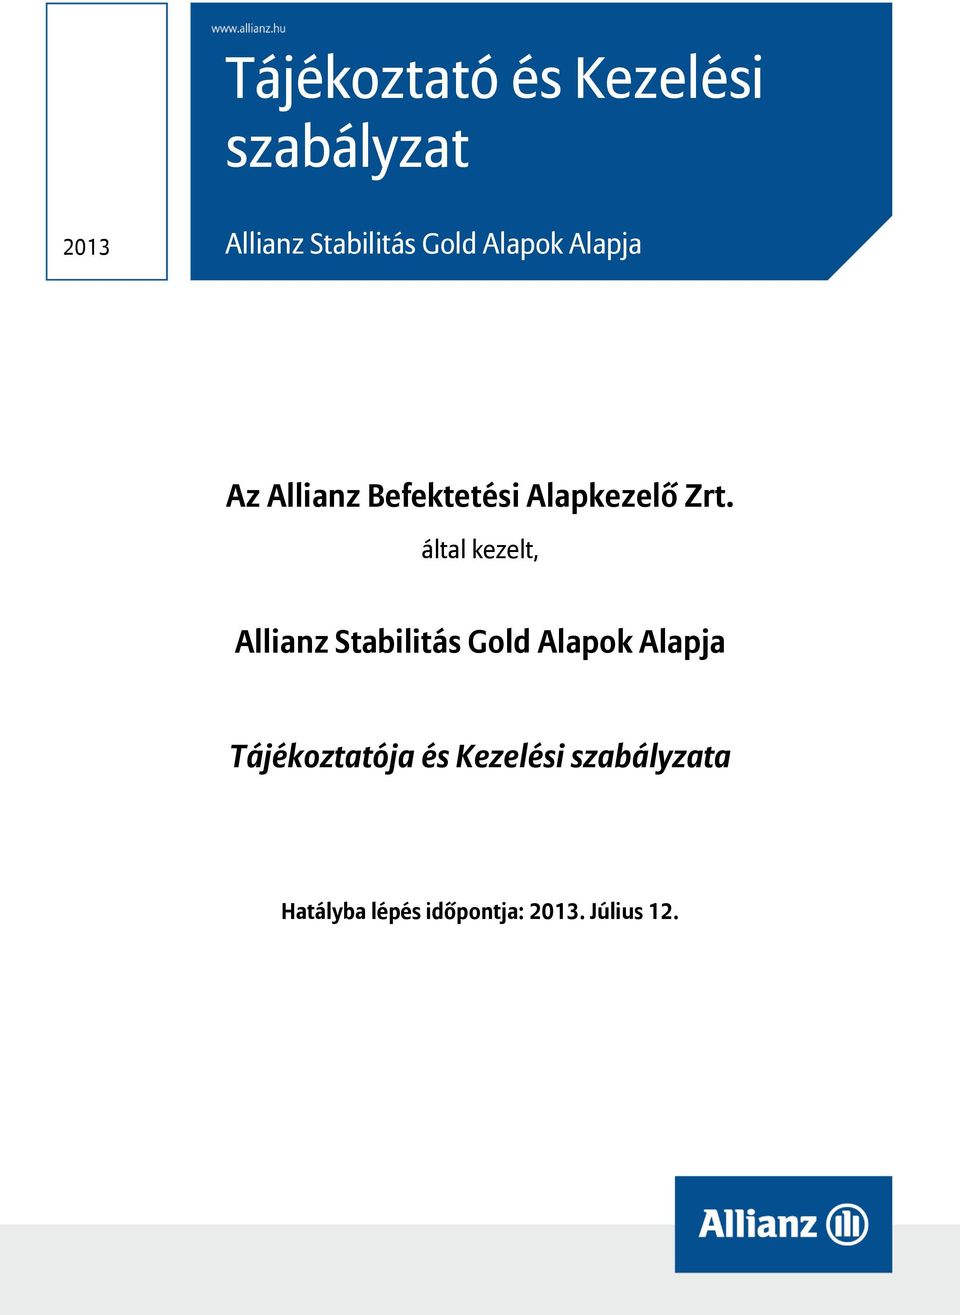 által kezelt, Allianz Stabilitás Gold Alapok Alapja